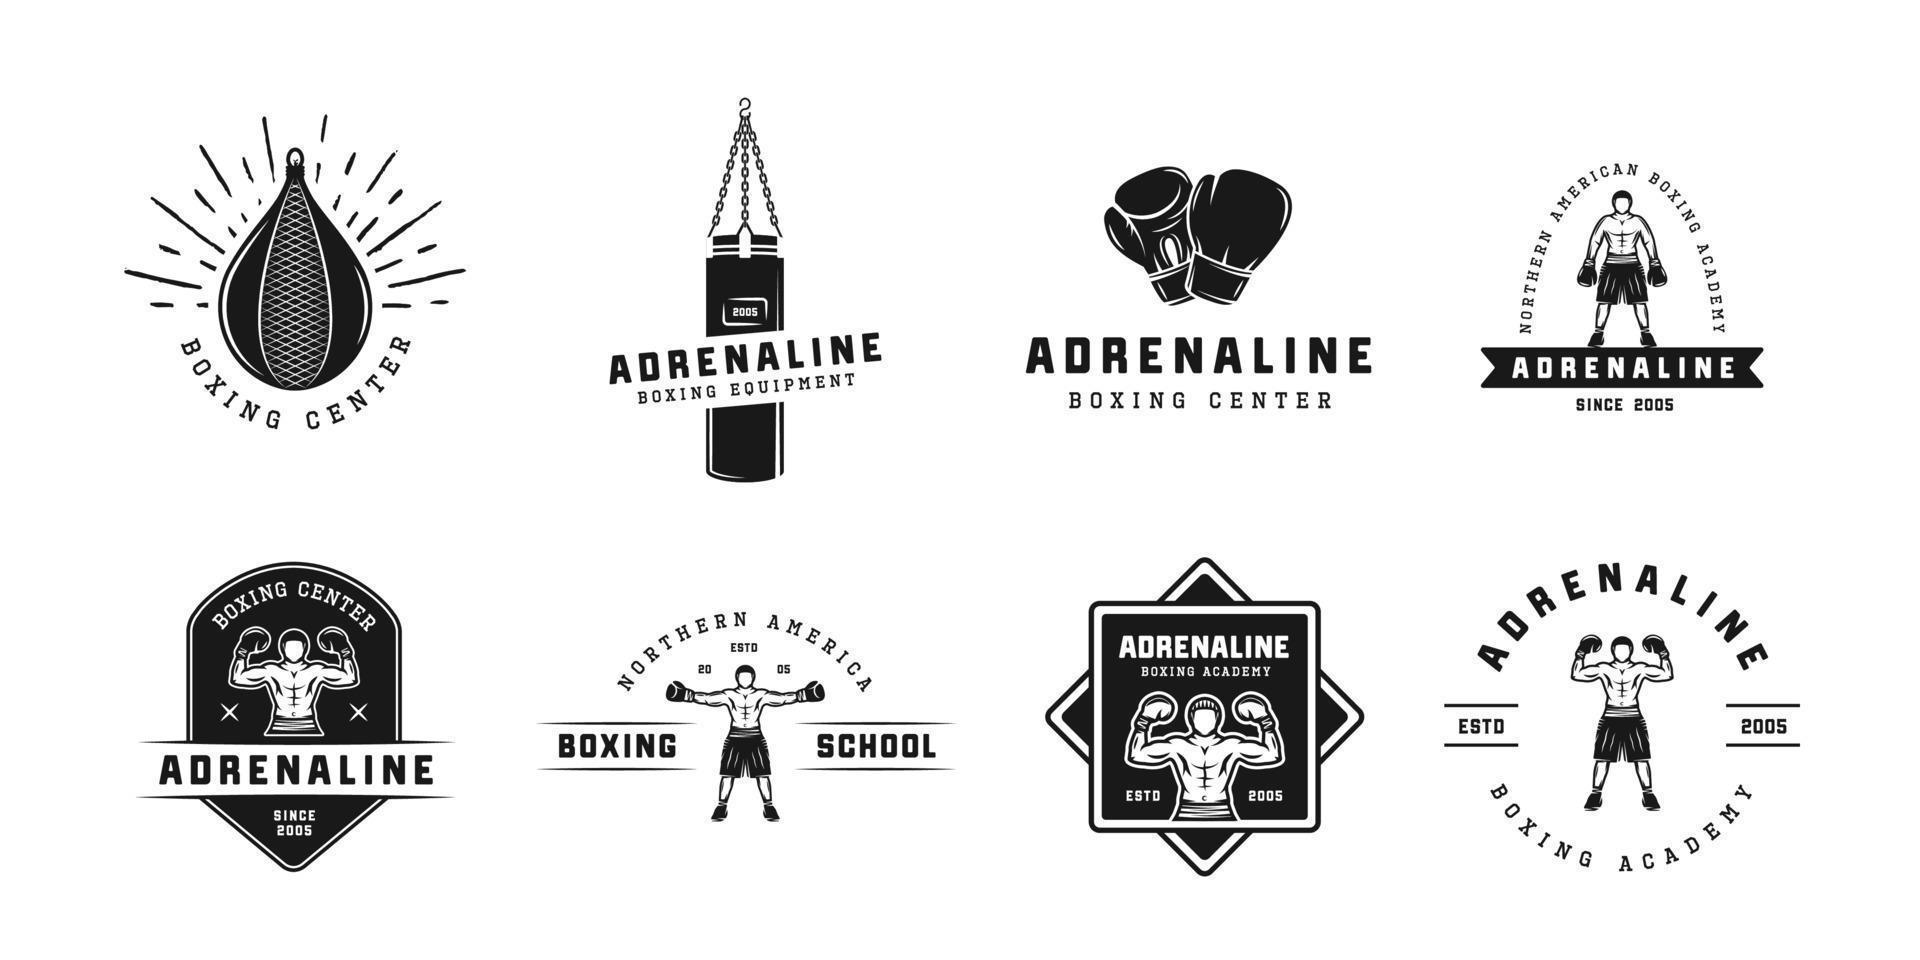 boksen en krijgshaftig kunsten logo badges en etiketten in wijnoogst stijl. motiverende posters met inspirerend citaten. vector